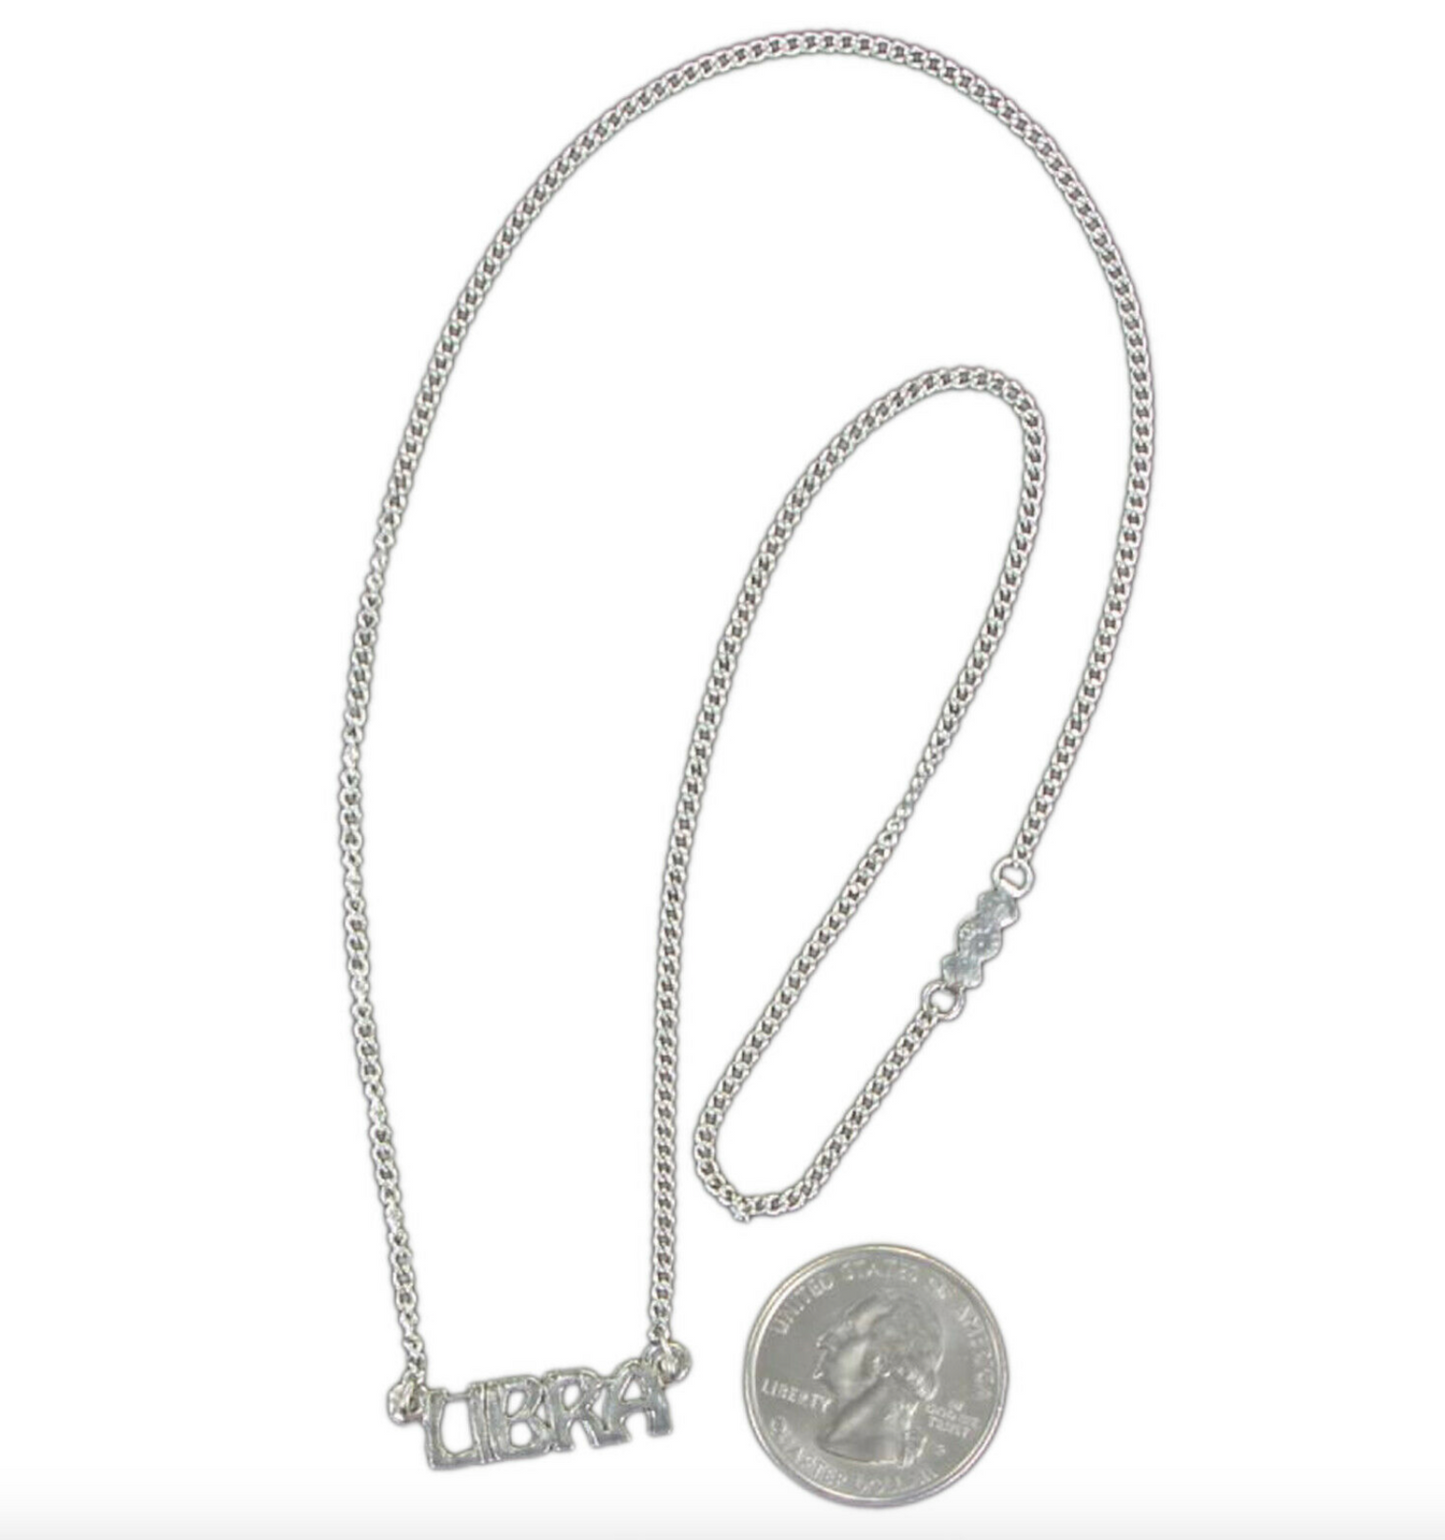 Vintage Silver LIBRA Necklace